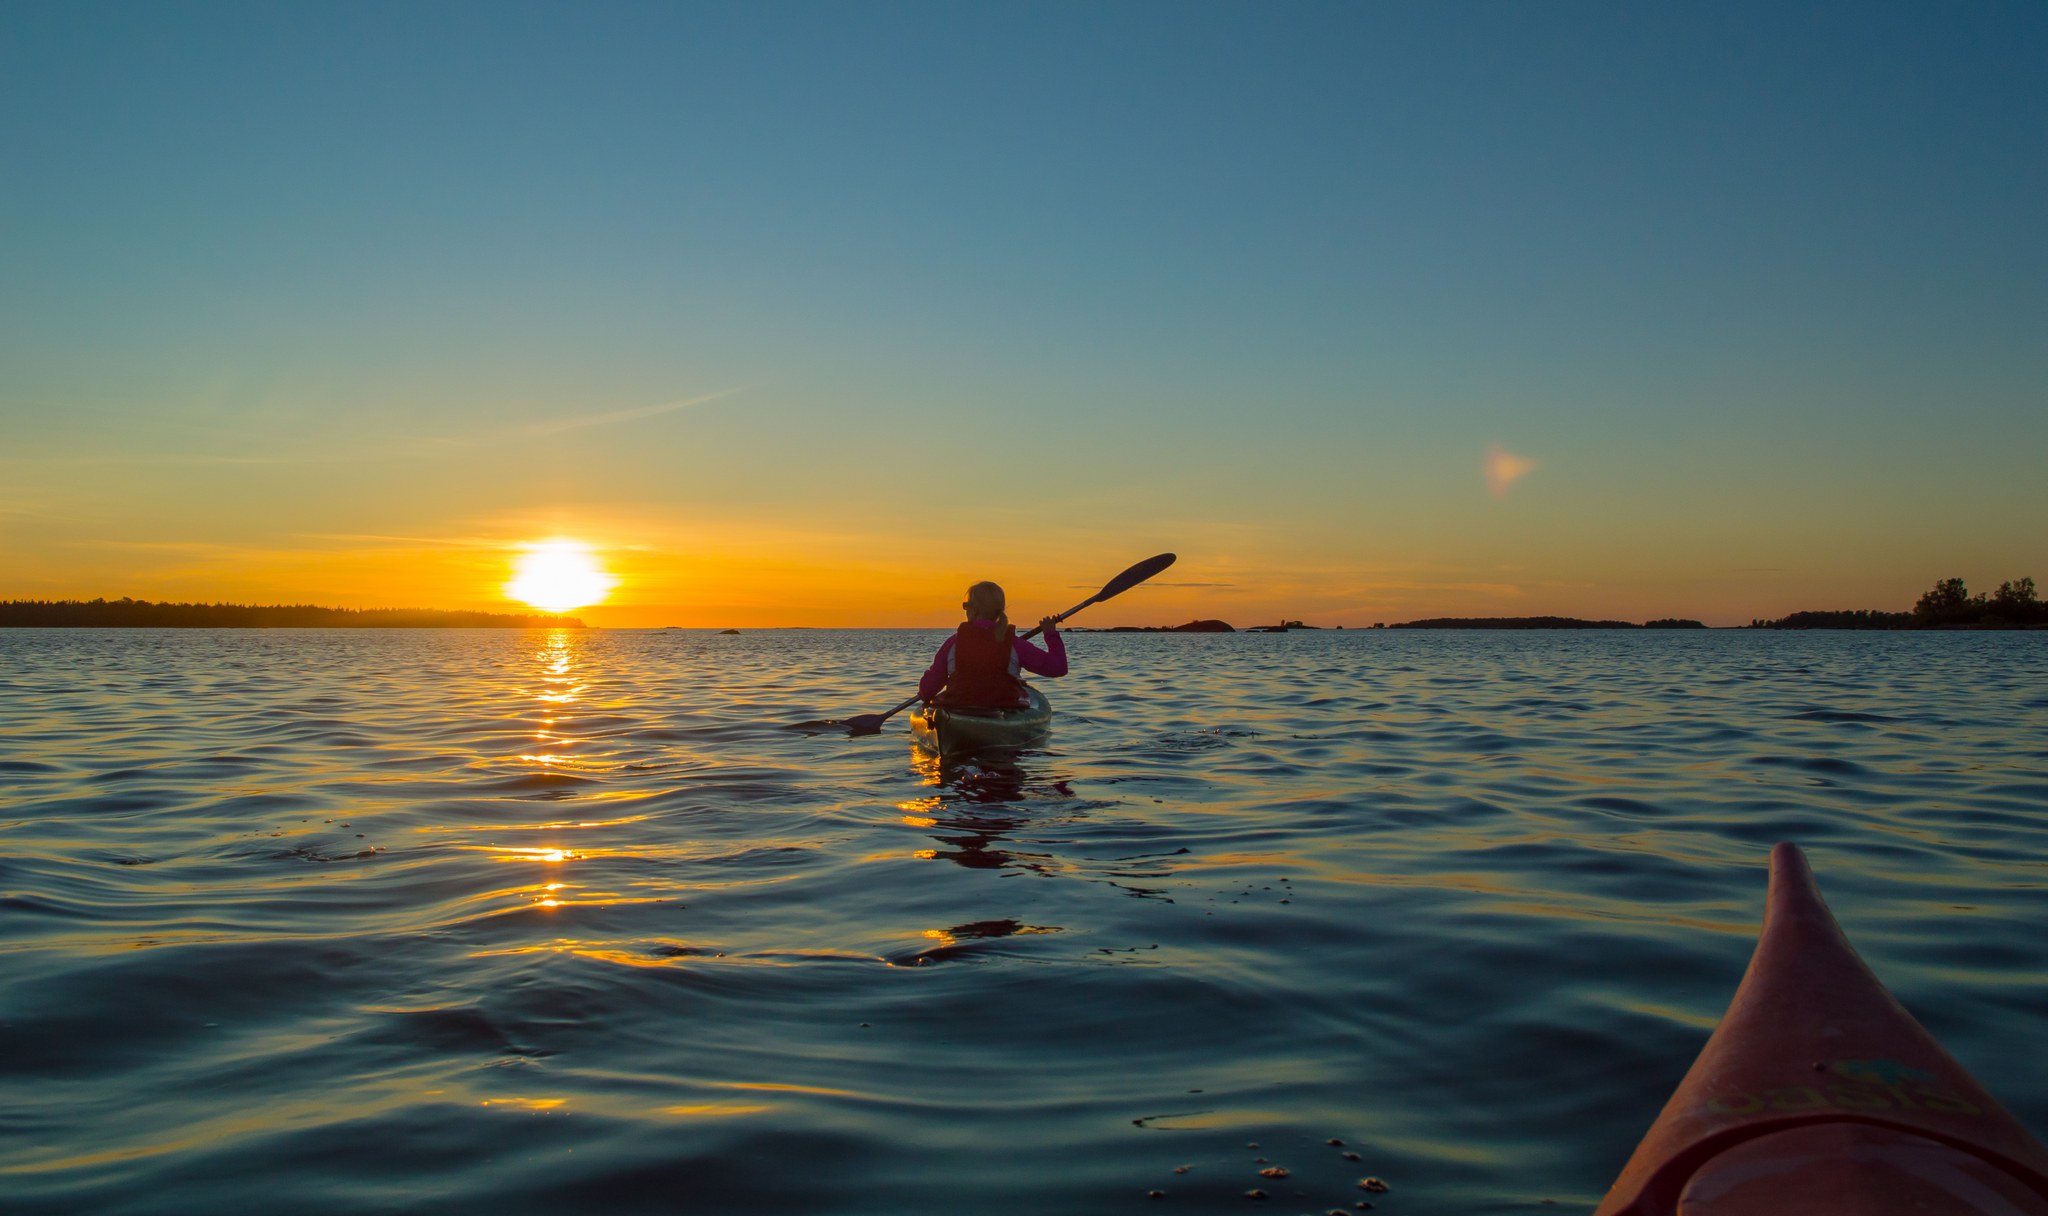 Canoeist at sunset by Kalajoki seaside